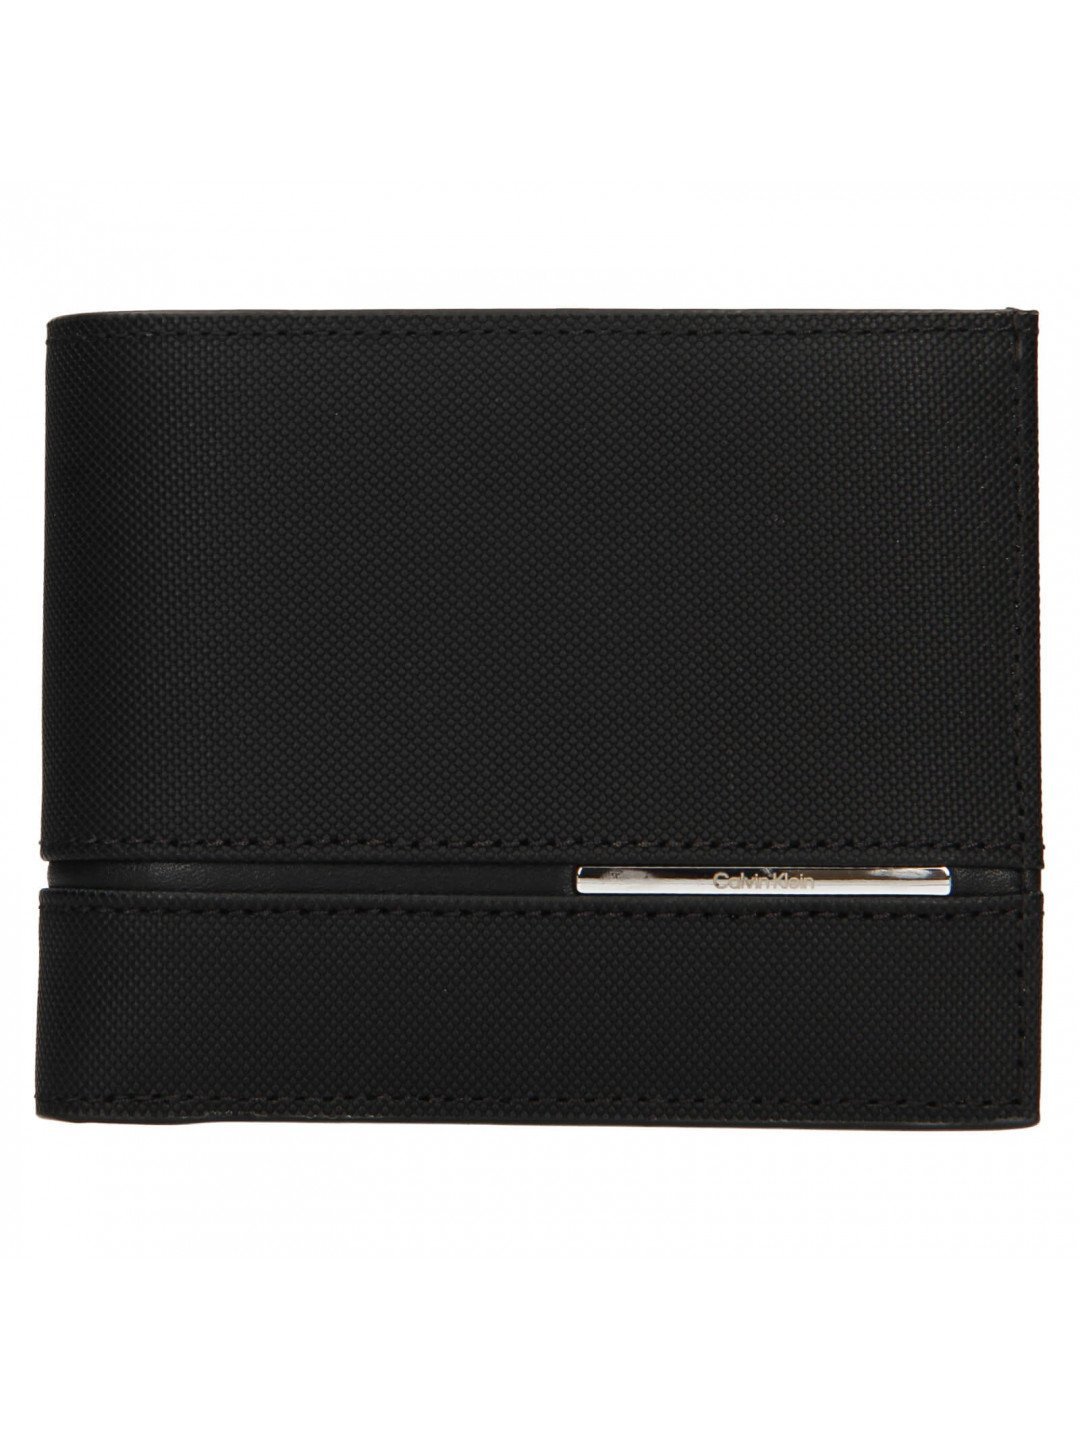 Pánská kožená peněženka Calvin Klein Vendos – černá